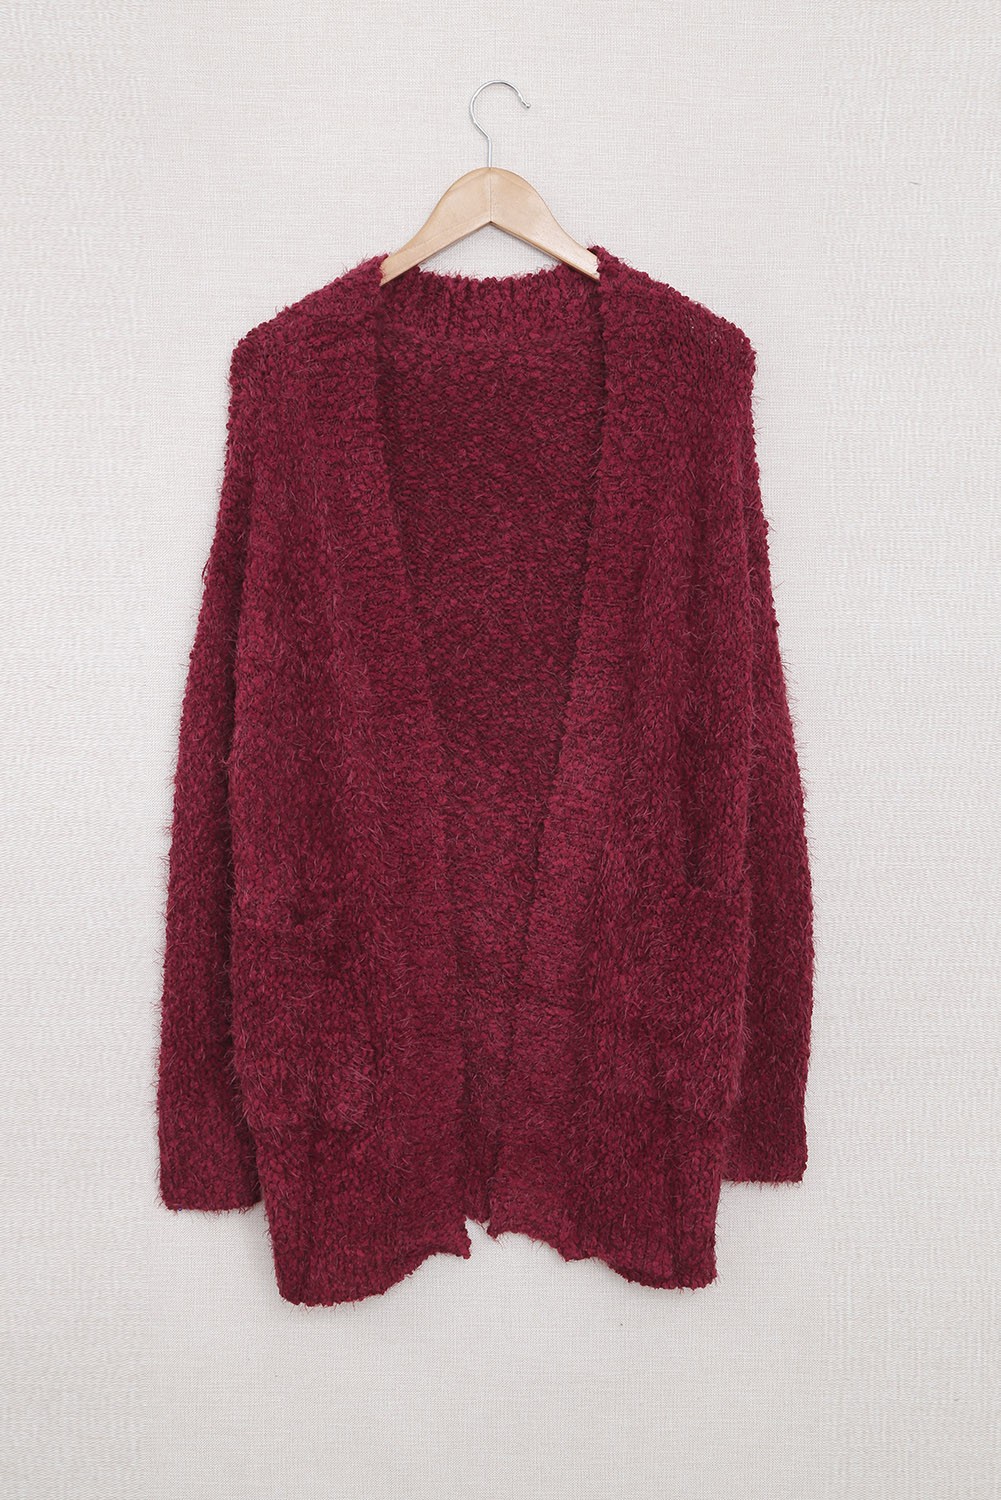 Fuzzy Knit Cardigan with Pockets (6)